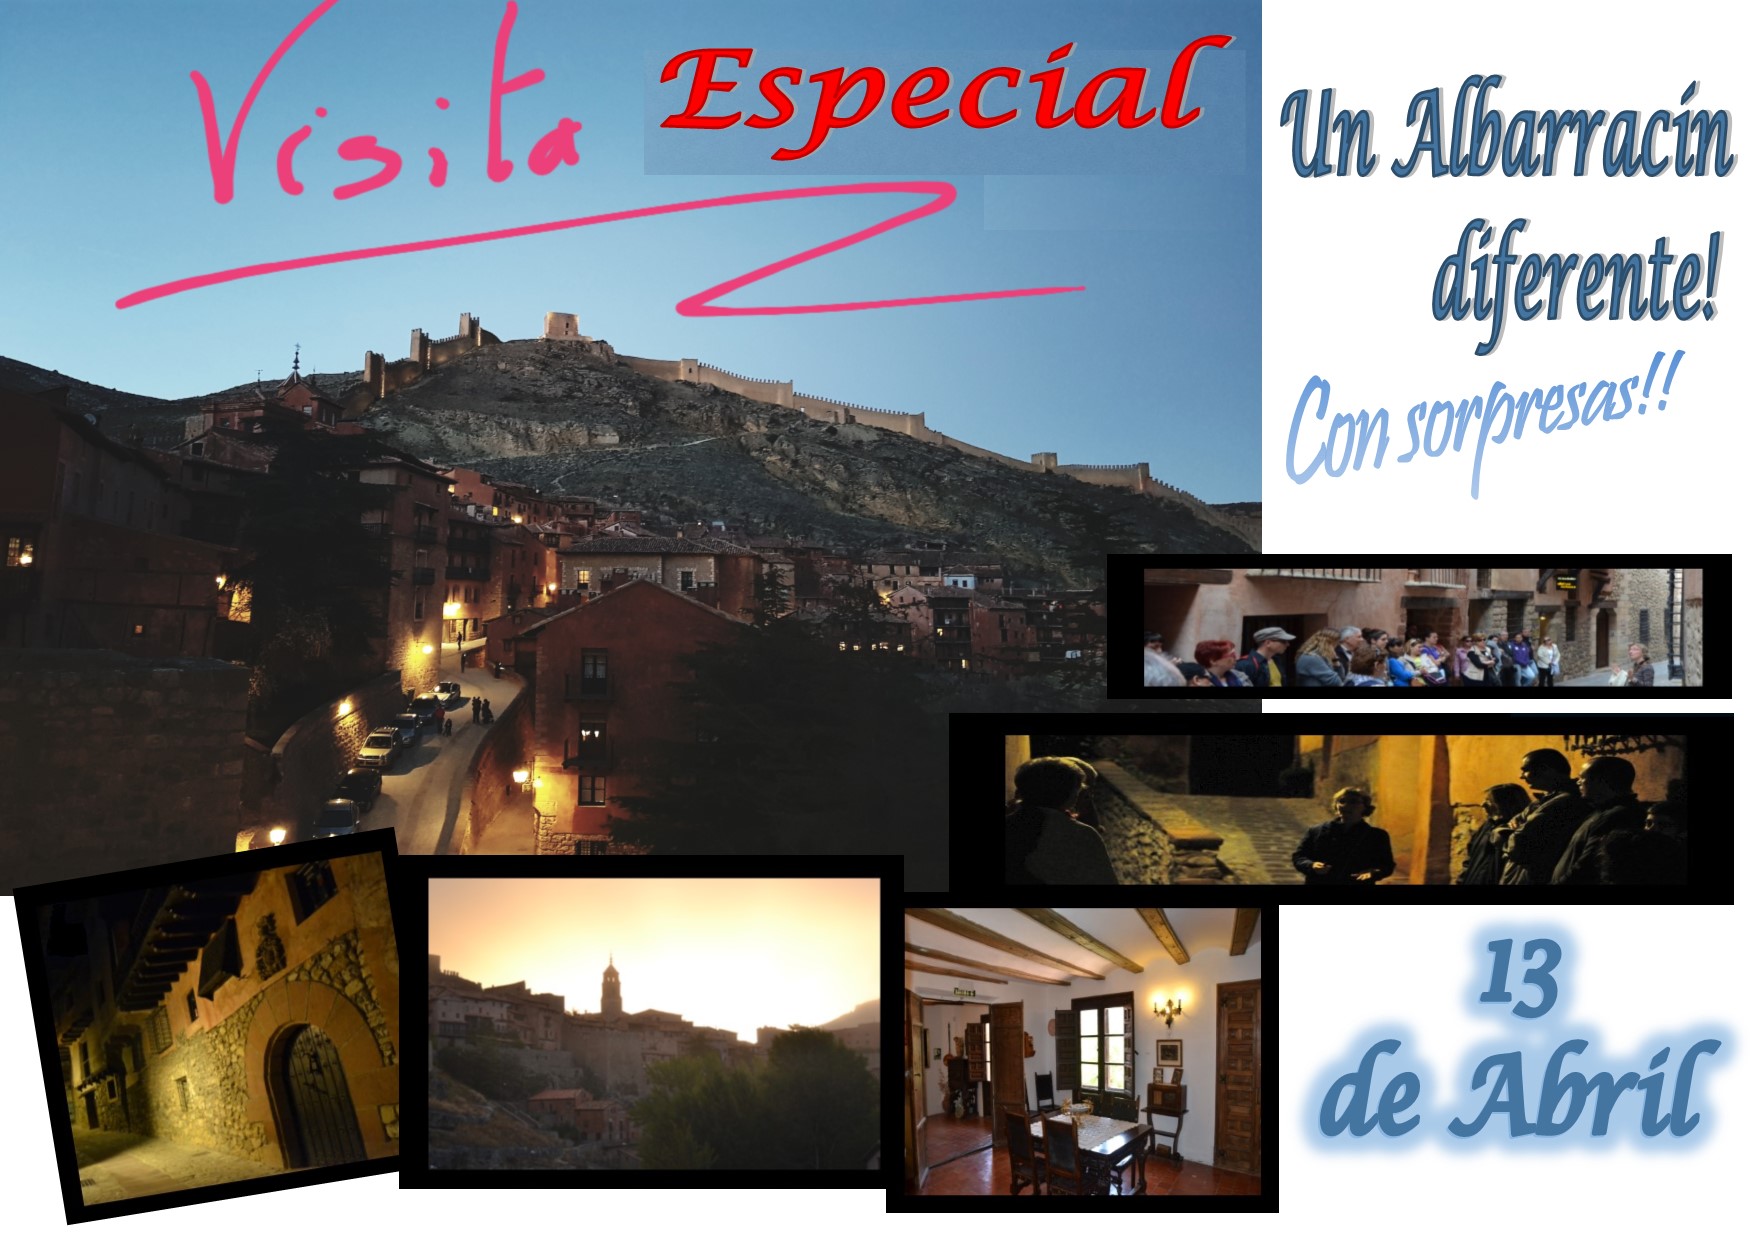 La tarde del Sábado 13 de Abril….Albarracín Especial + Casa Museo…con sorpresas!!